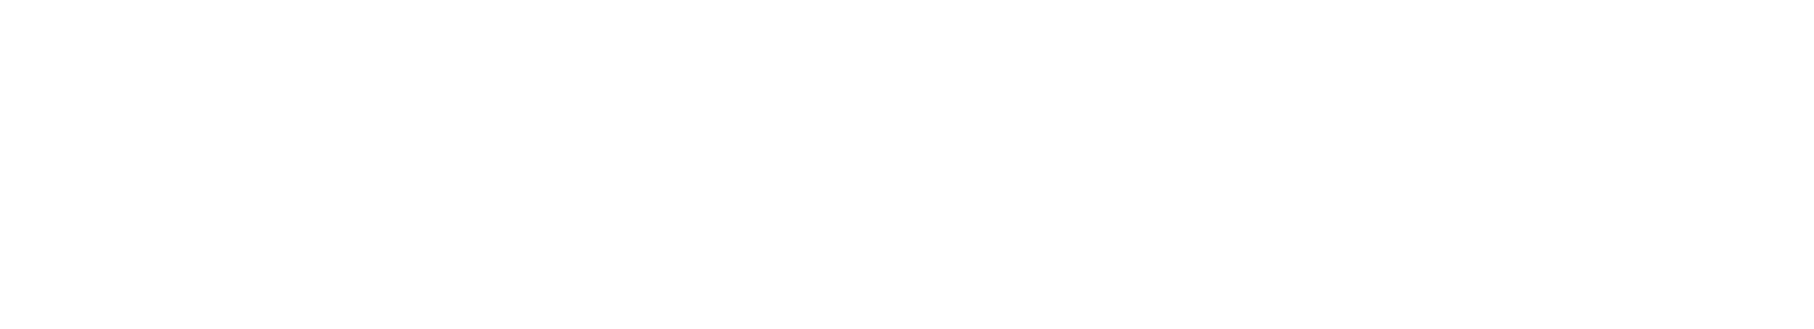 McCann logo